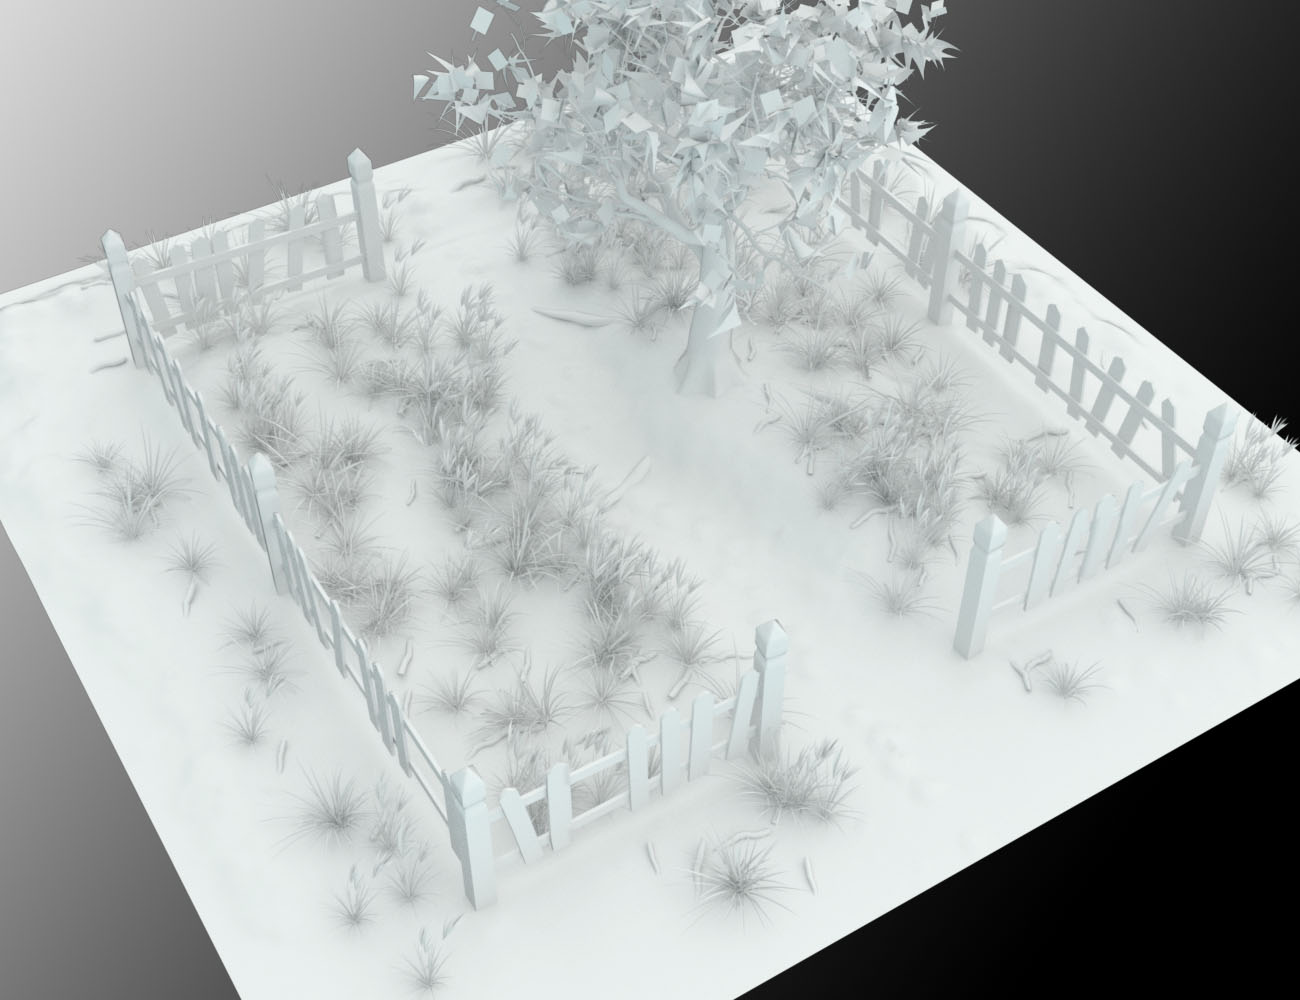 Lonely Garden by: vikike176, 3D Models by Daz 3D